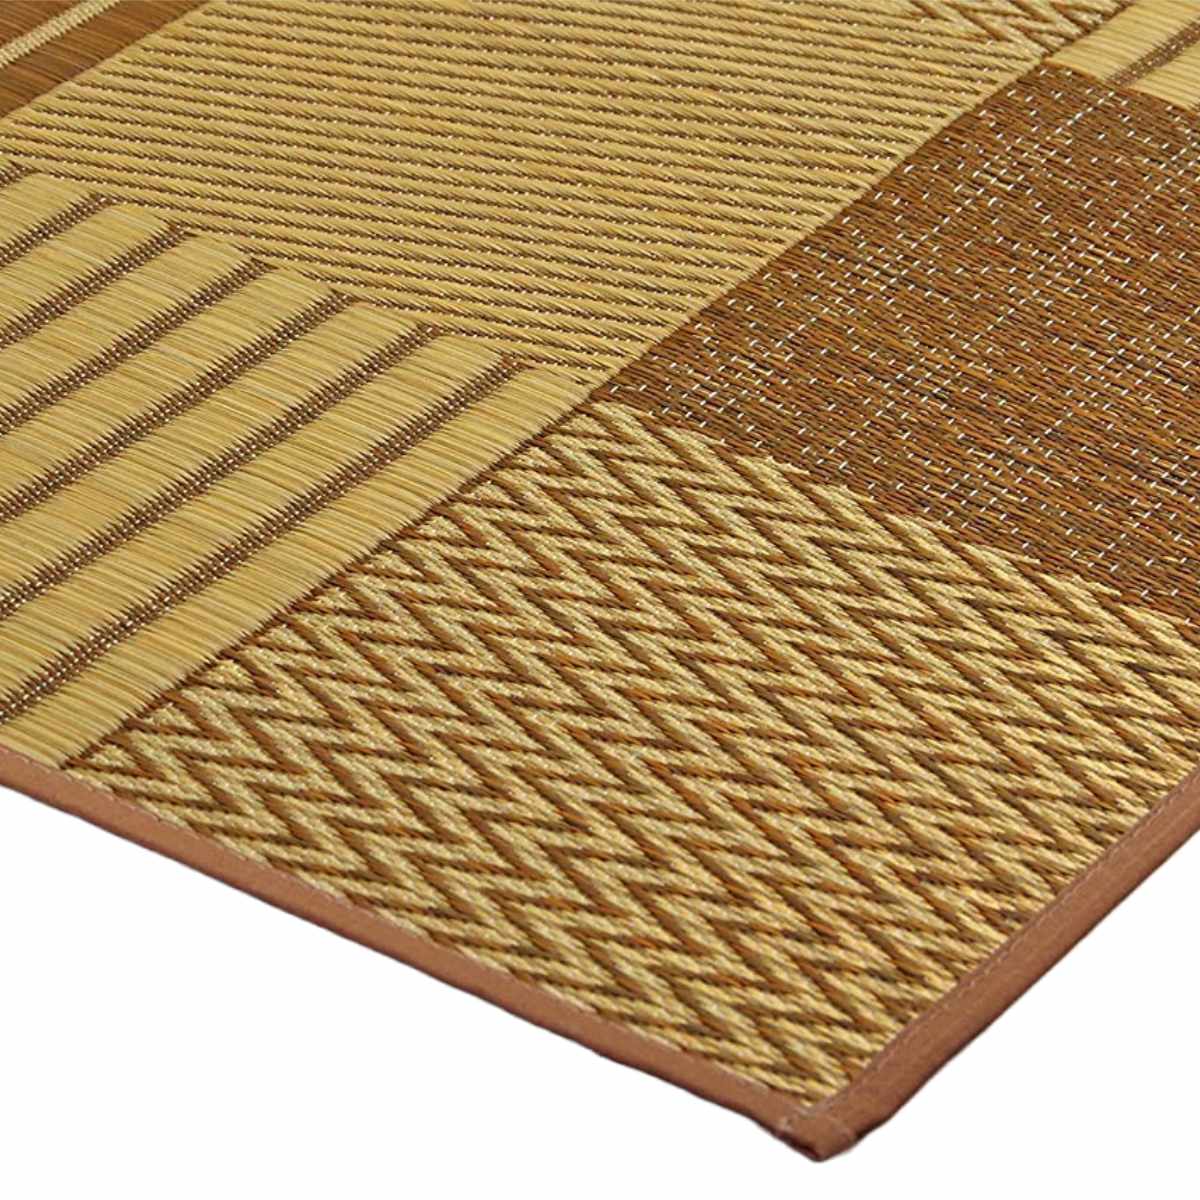 い草上敷き 純国産 袋織 い草ラグカーペット DX京刺子 約191×300cm 裏